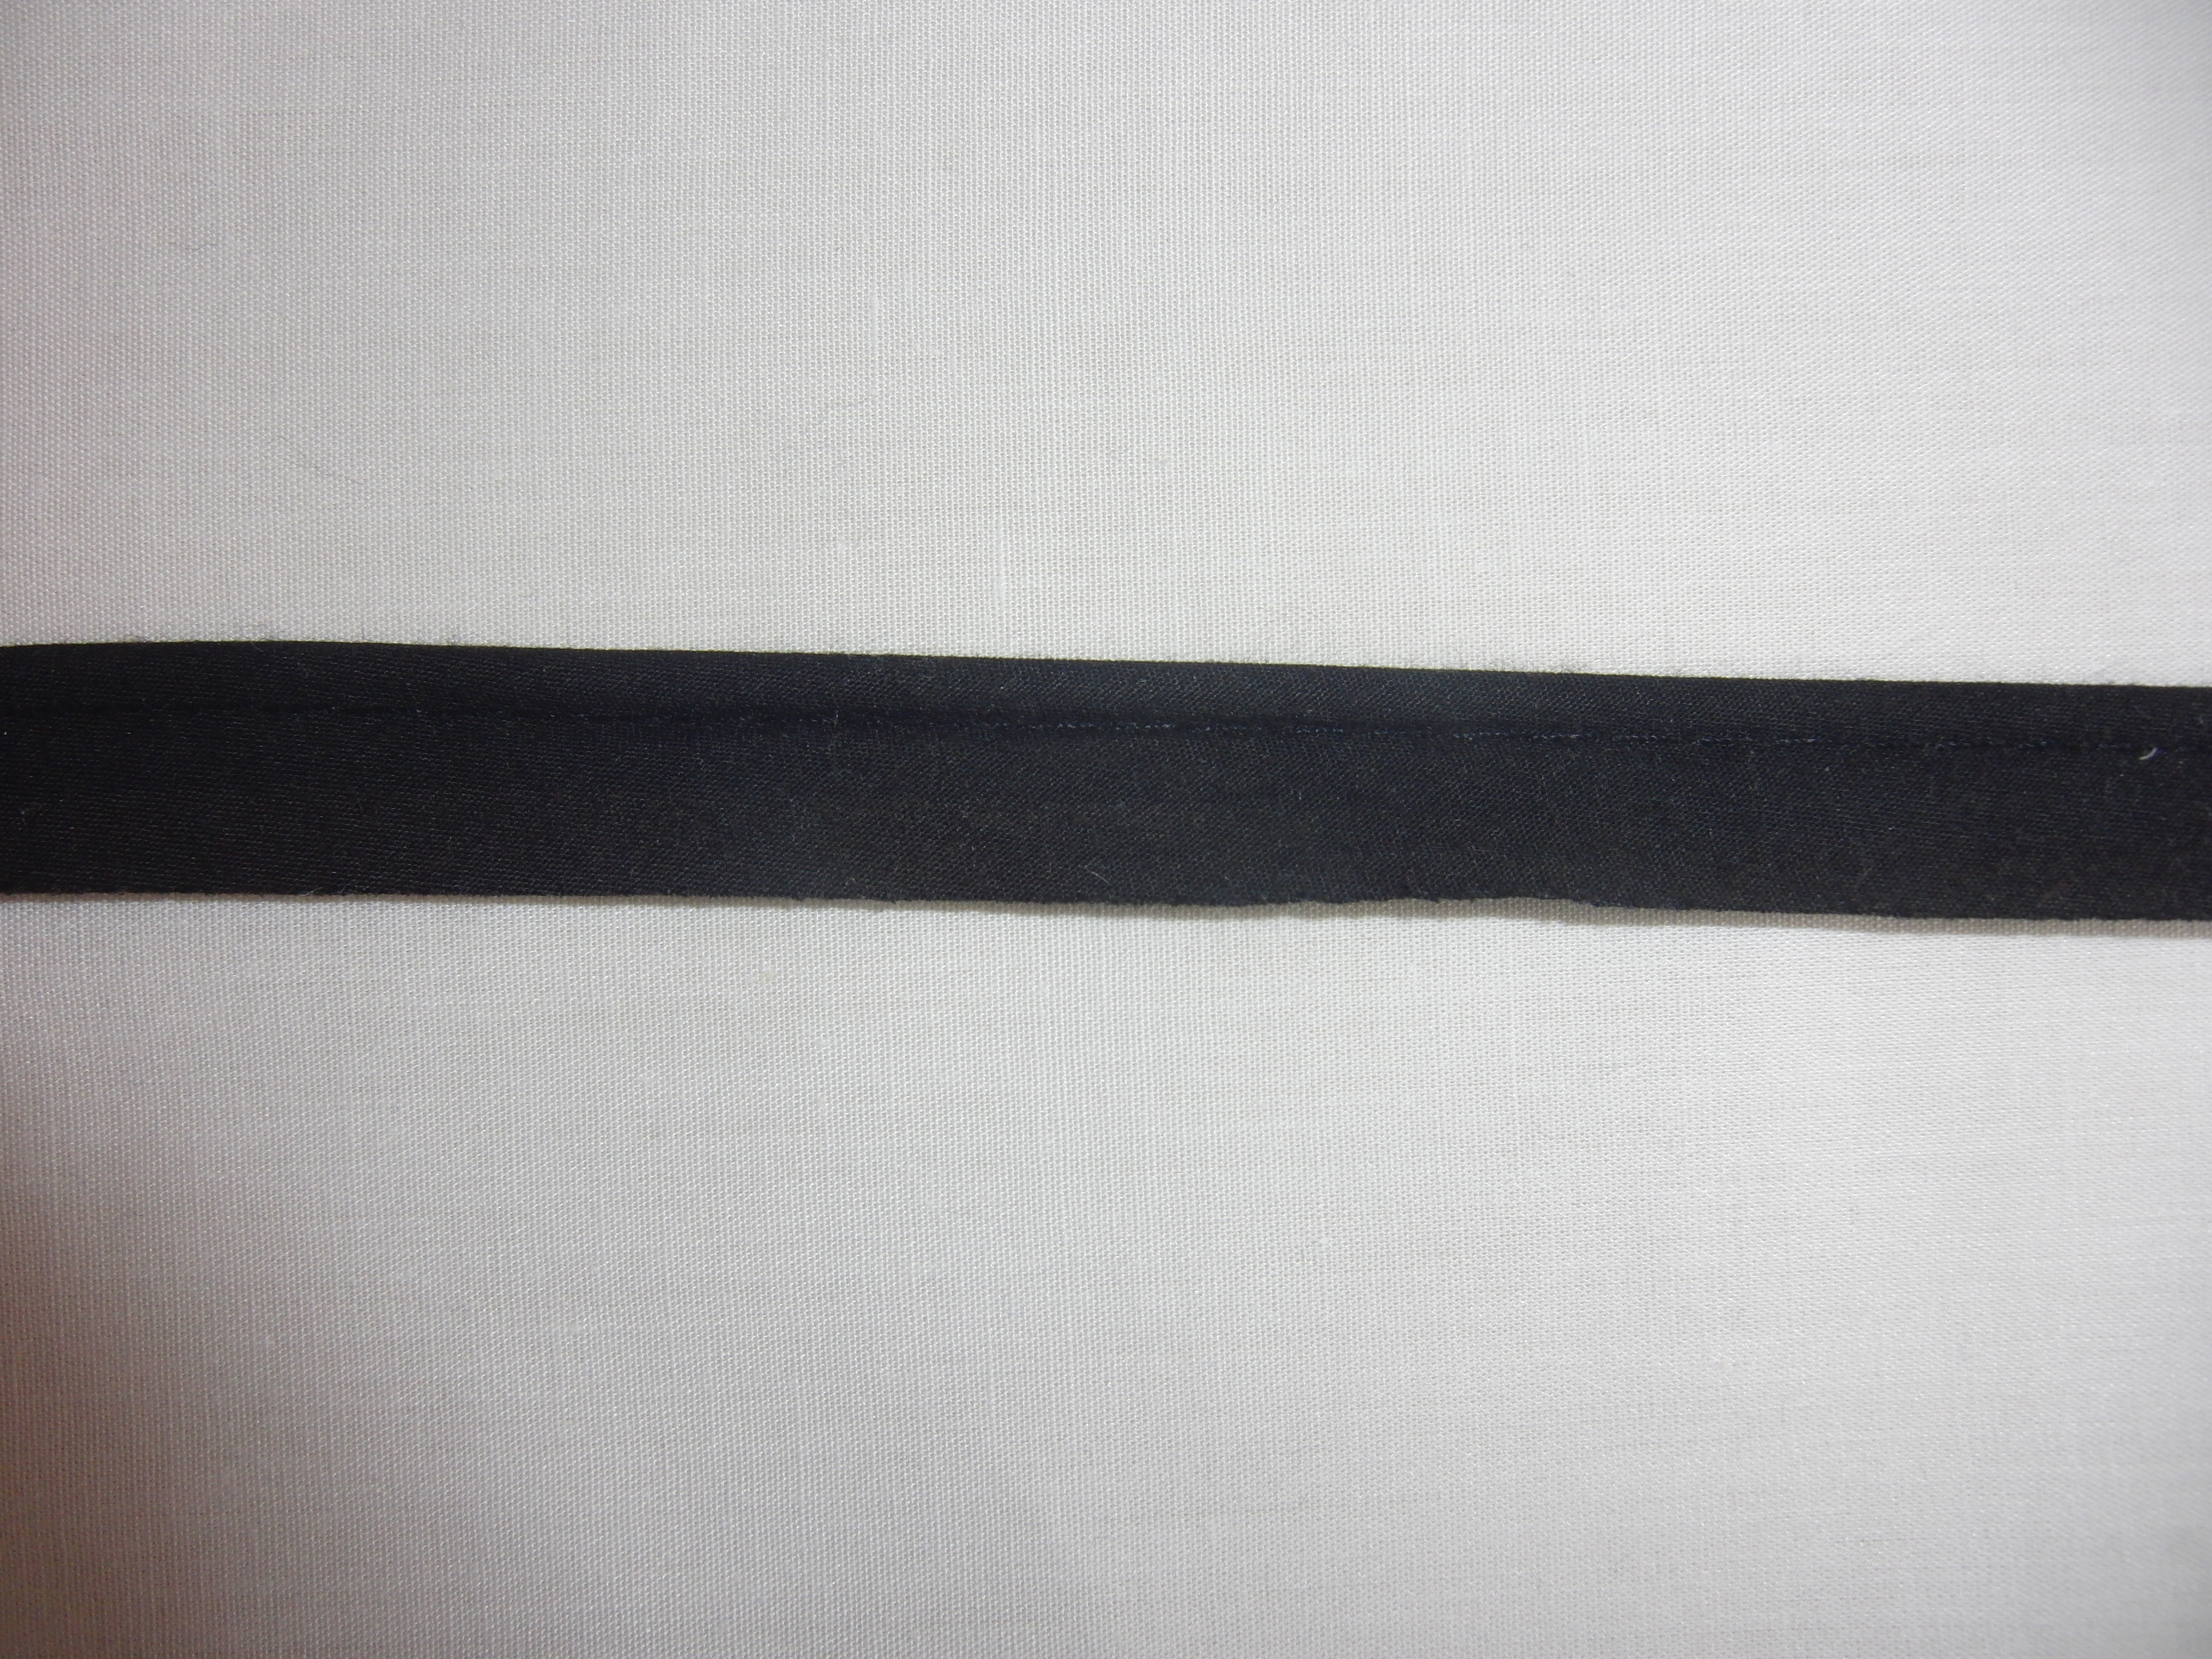 Kederband - Gewicht: 80 g/m² - Länge: 10 m - Breite: 15 mm - Farbe: schwarz, Schwarz